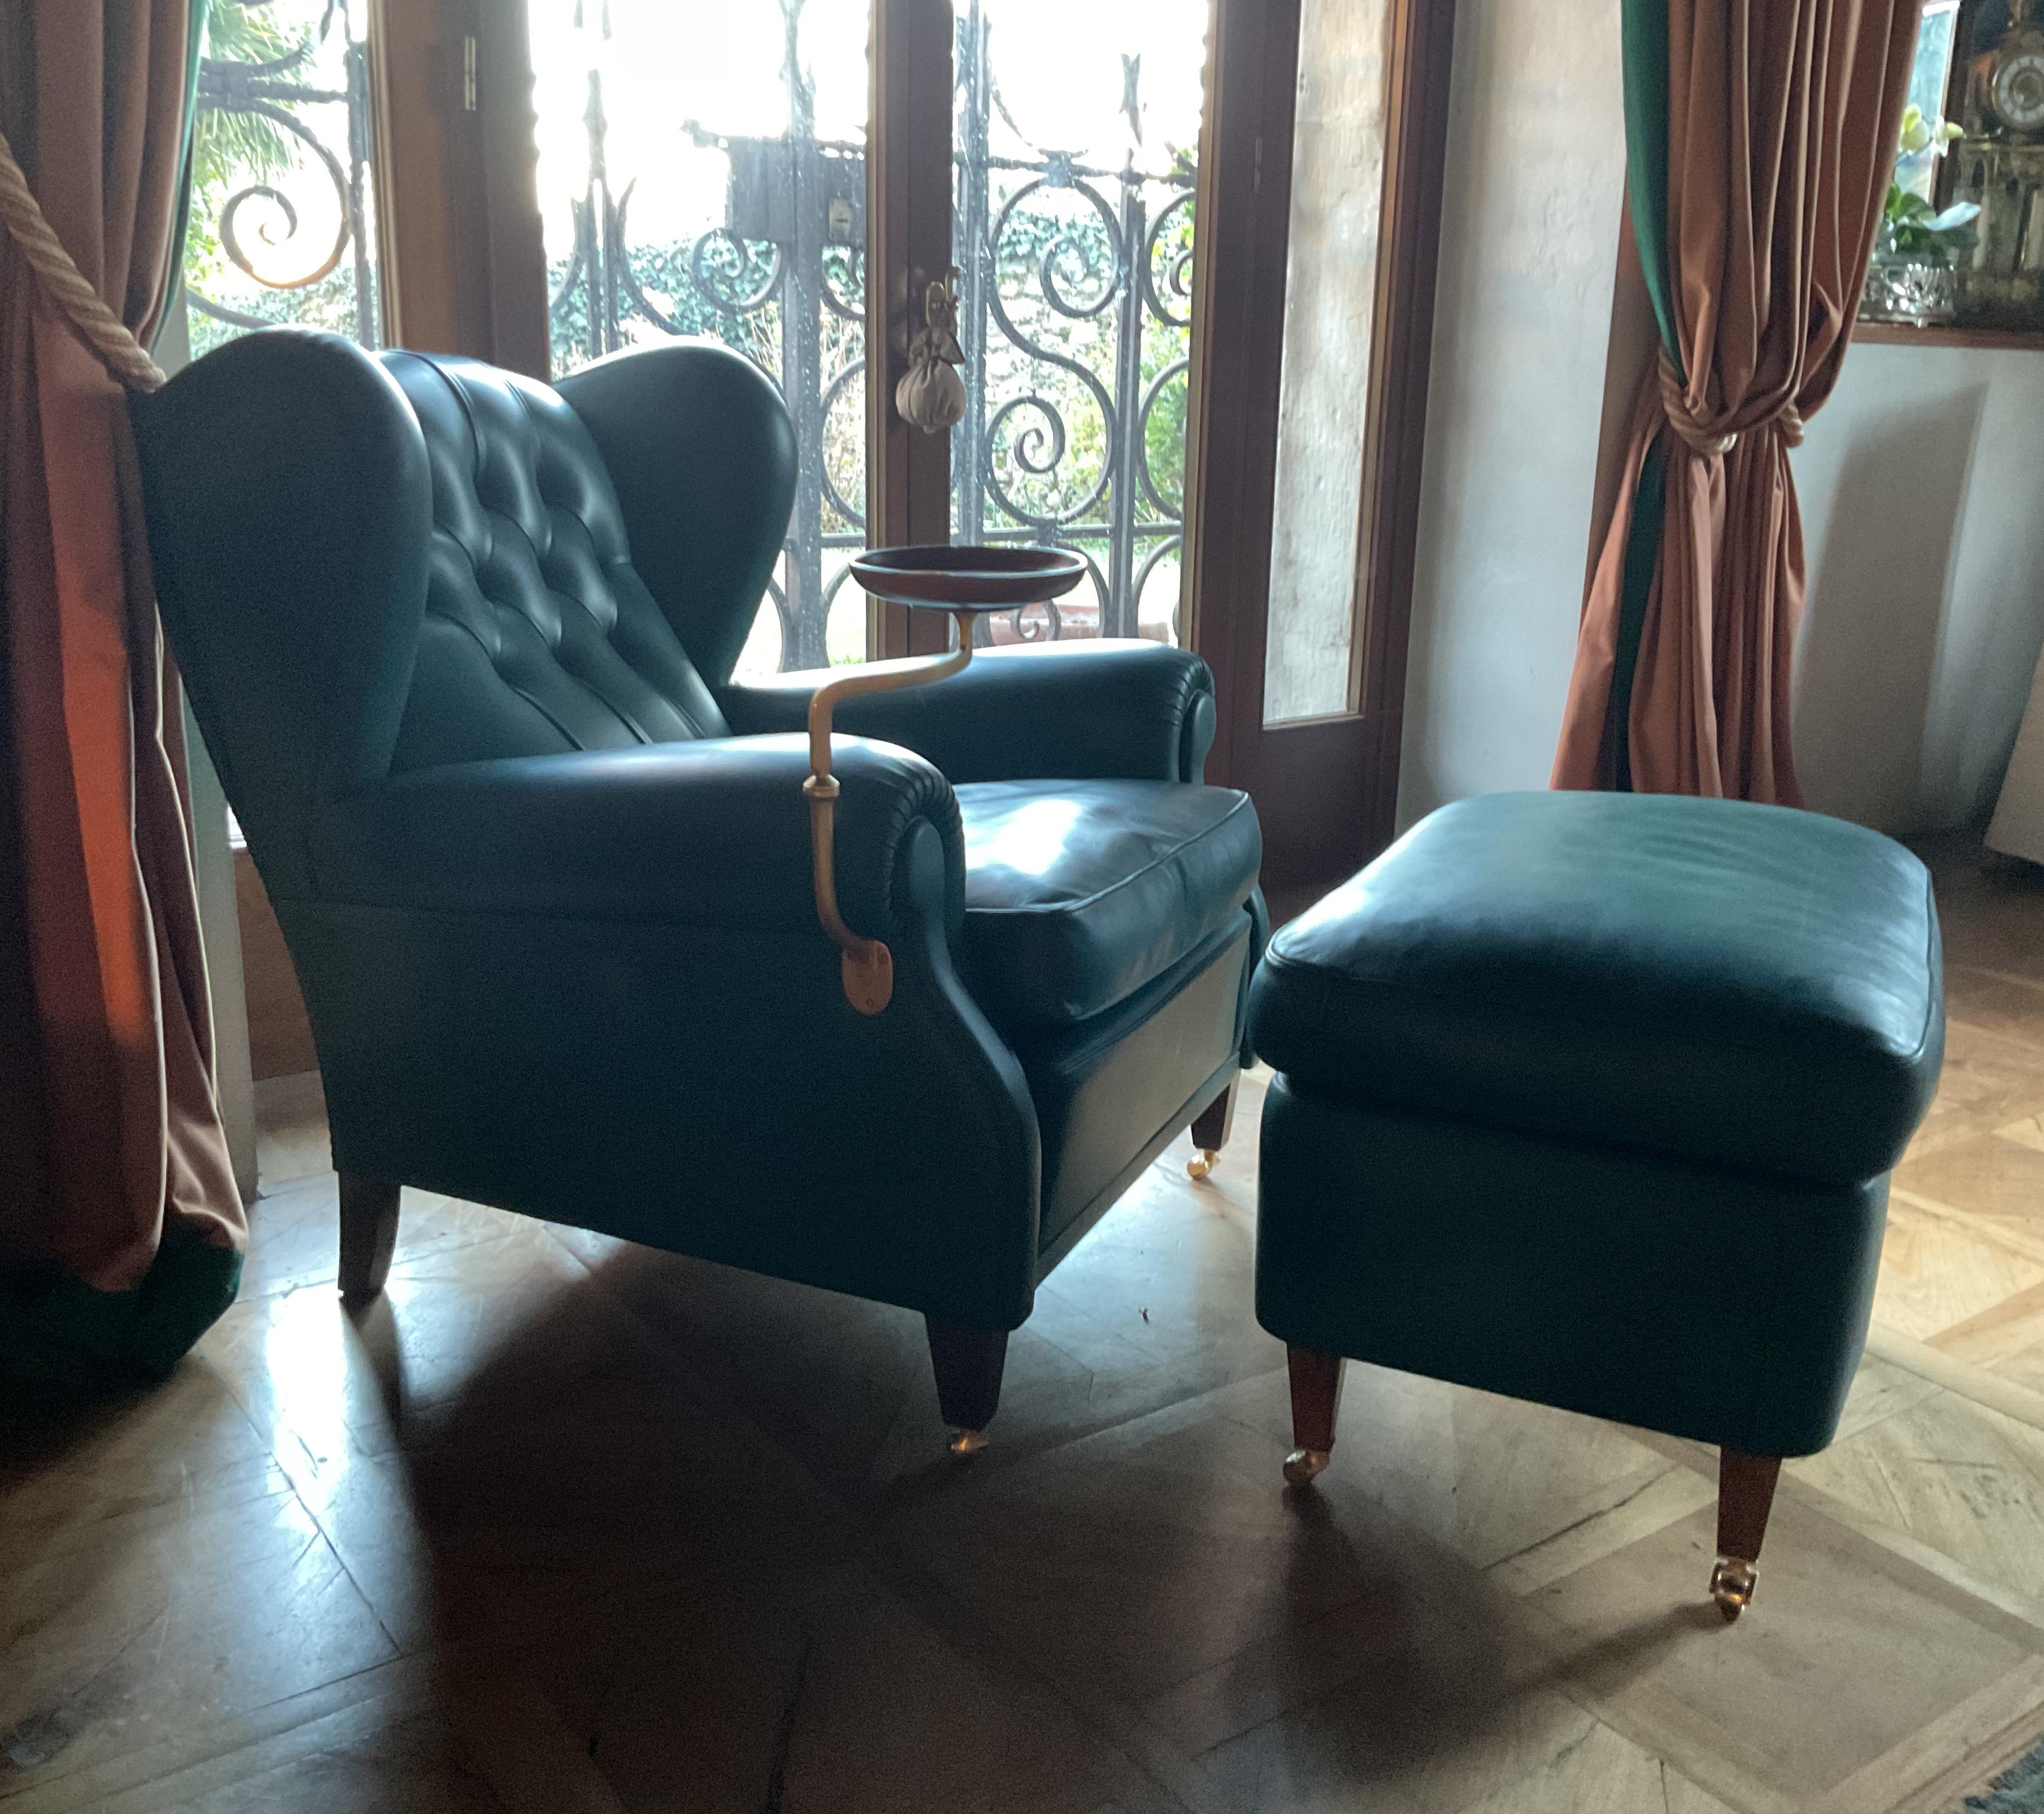 Fauteuil Frau modèle 1919 avec ottoman

1919, de Poltrona Frau, est un fauteuil historique inspiré du modèle 128, entré dans le catalogue de Renzo Frau en 1919, qui reprend les caractéristiques opulentes de la bergère rococo. Rembourré et